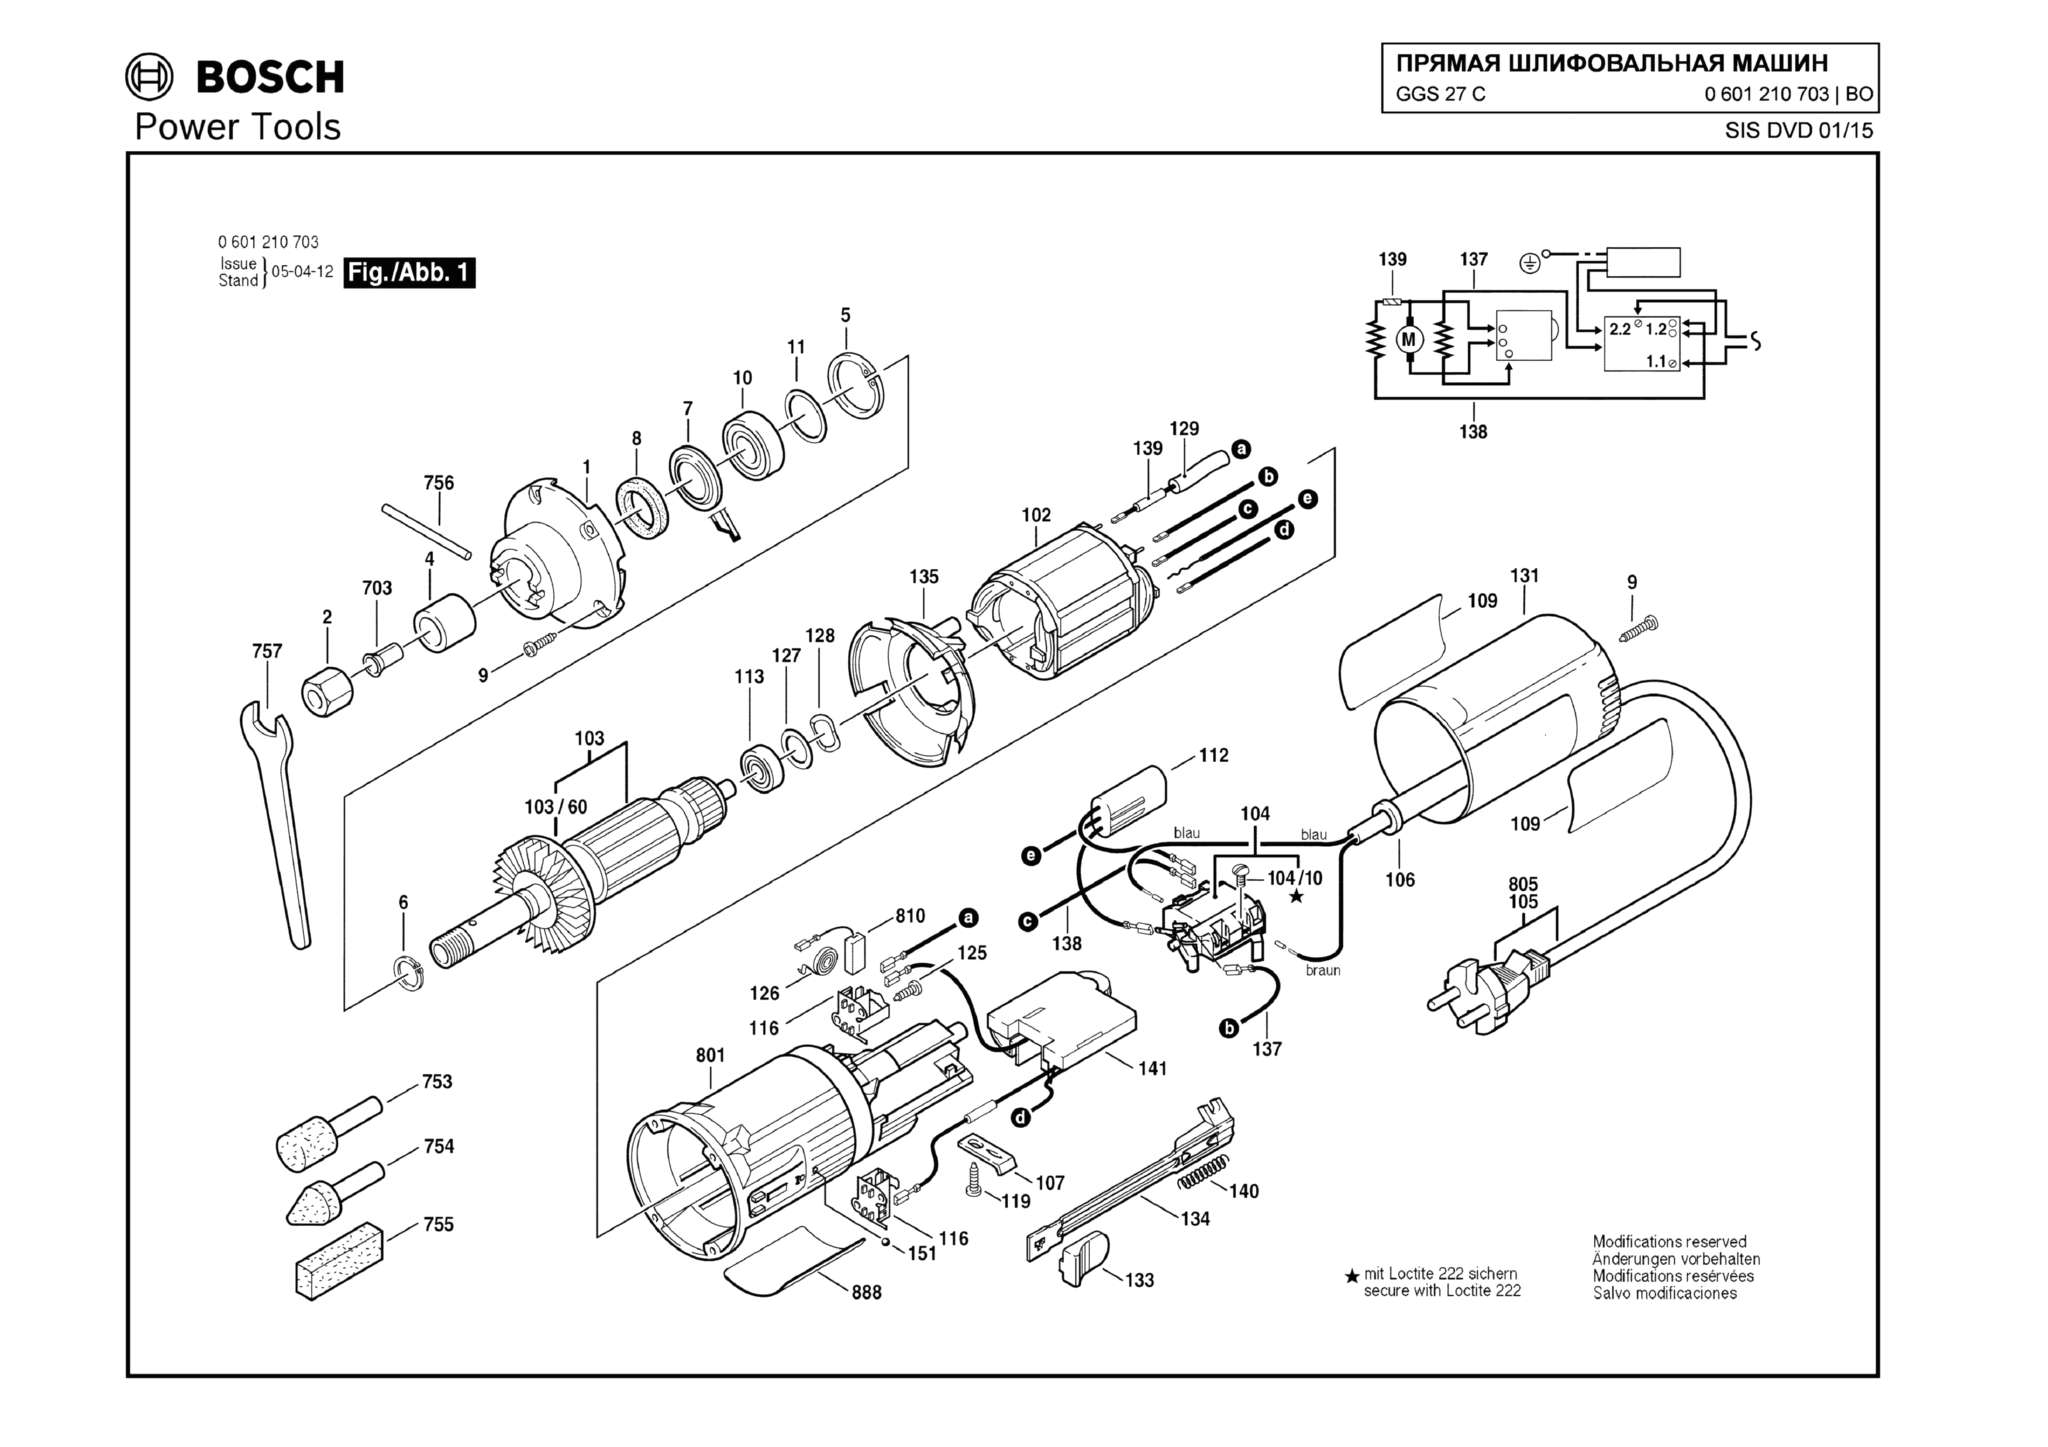 Запчасти, схема и деталировка Bosch GGS 27 C (ТИП 0601210703)